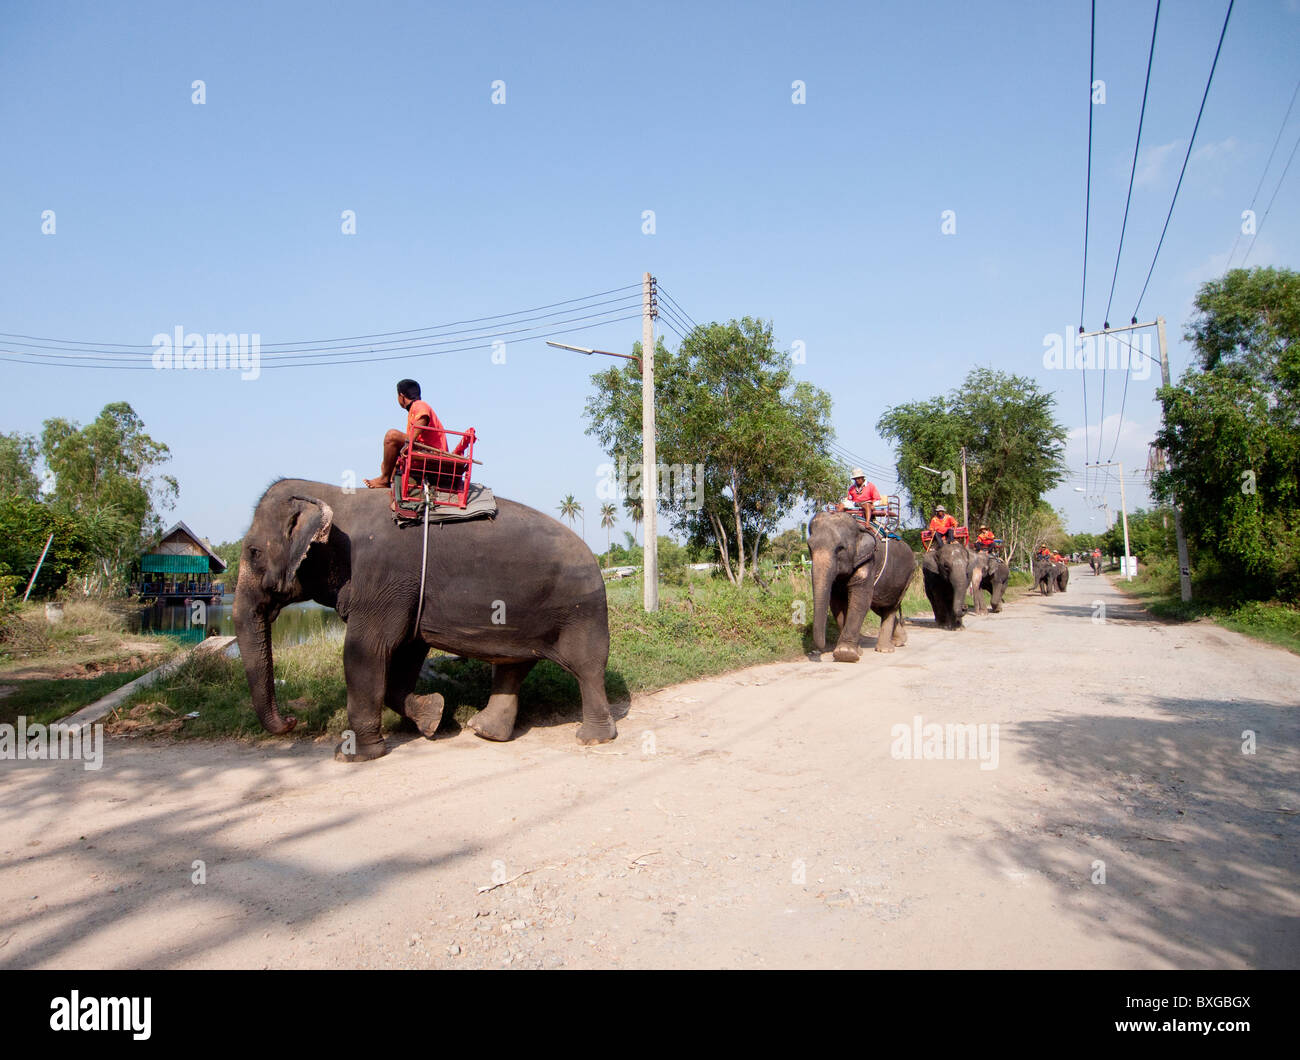 An elephants caravan walking along the road Stock Photo